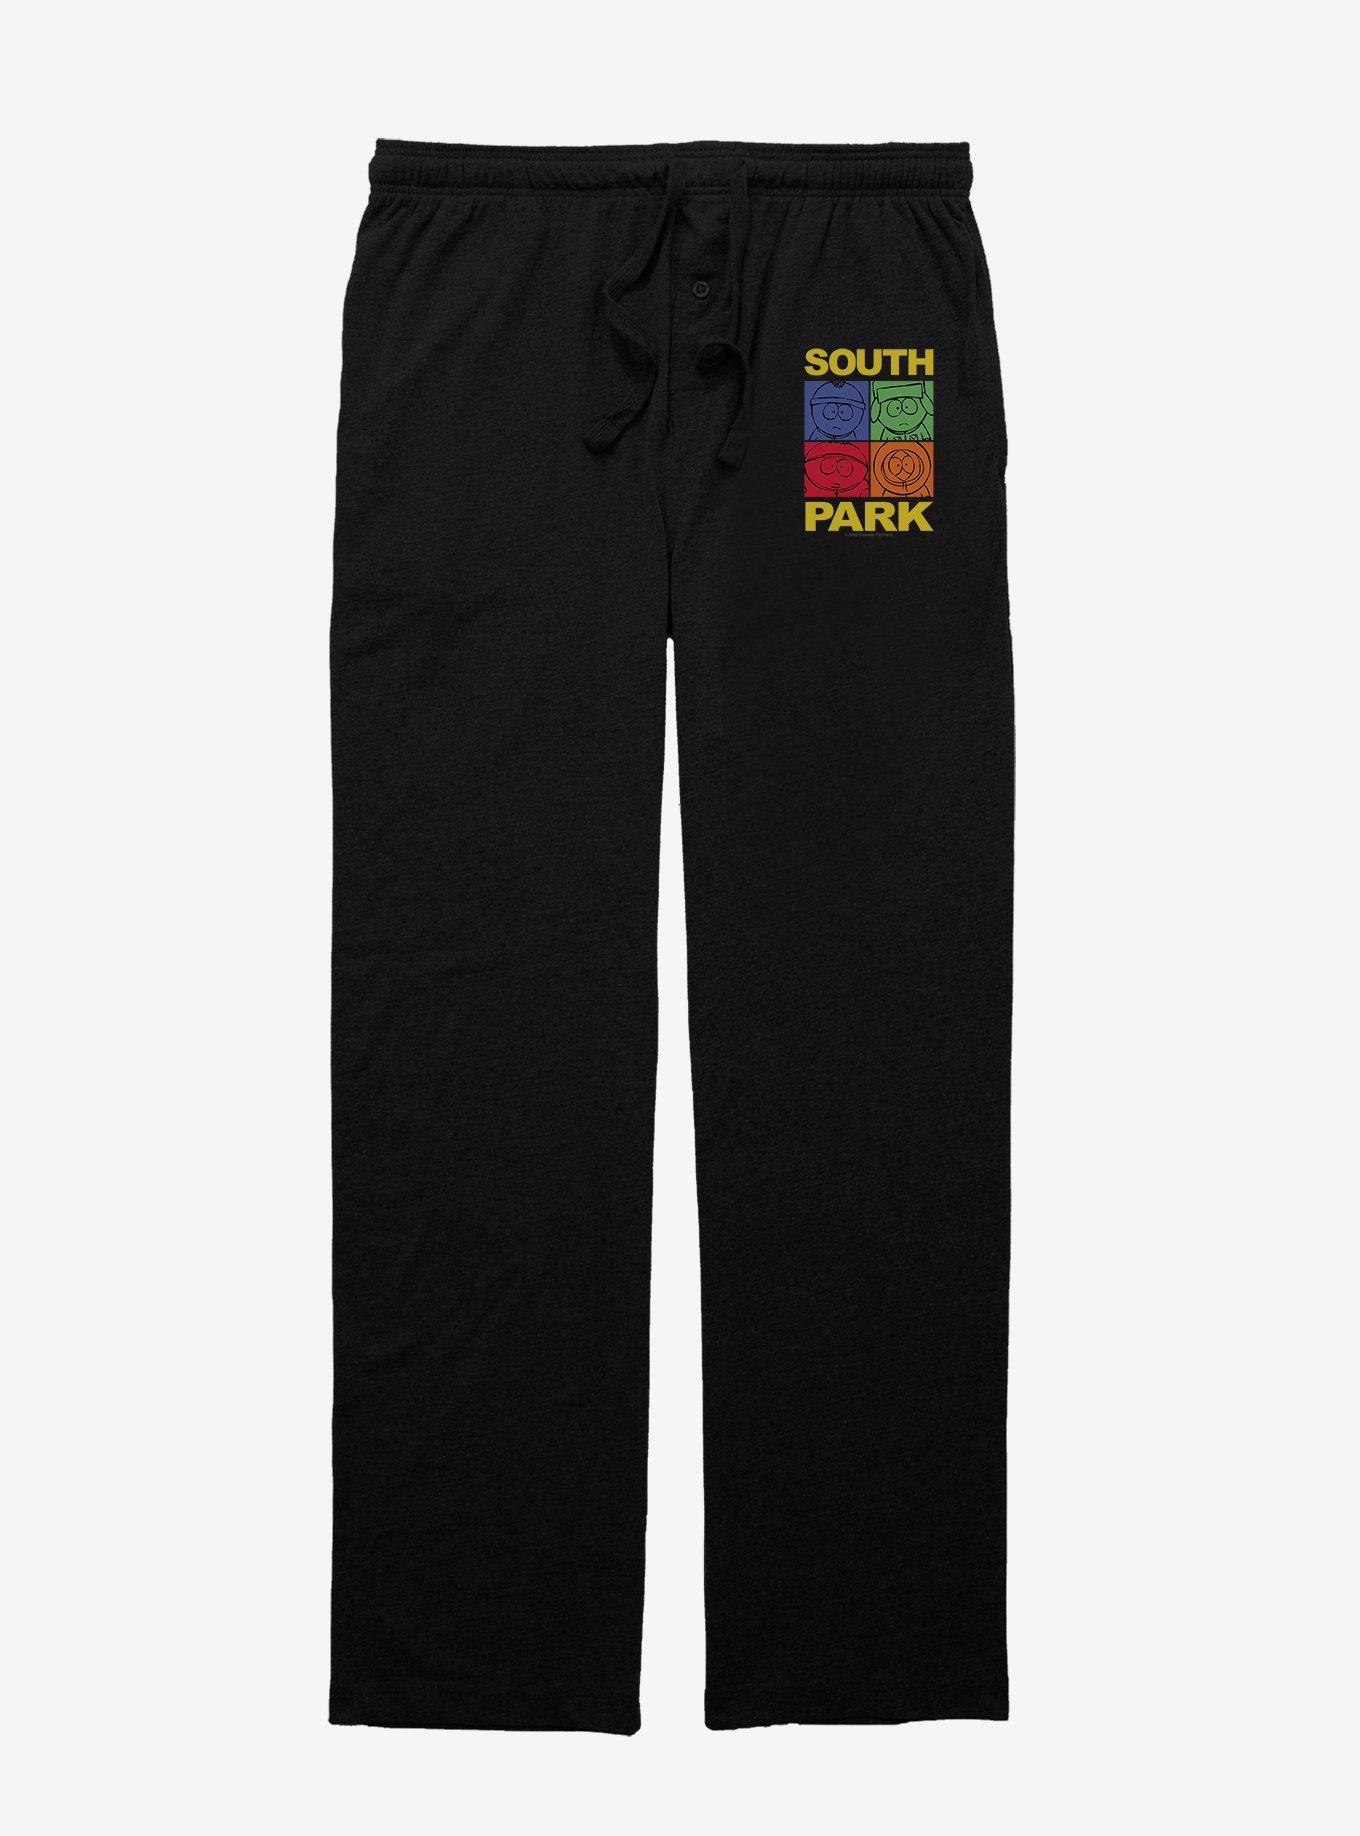 South Park Mood Meter Pajama Pants, BLACK, hi-res